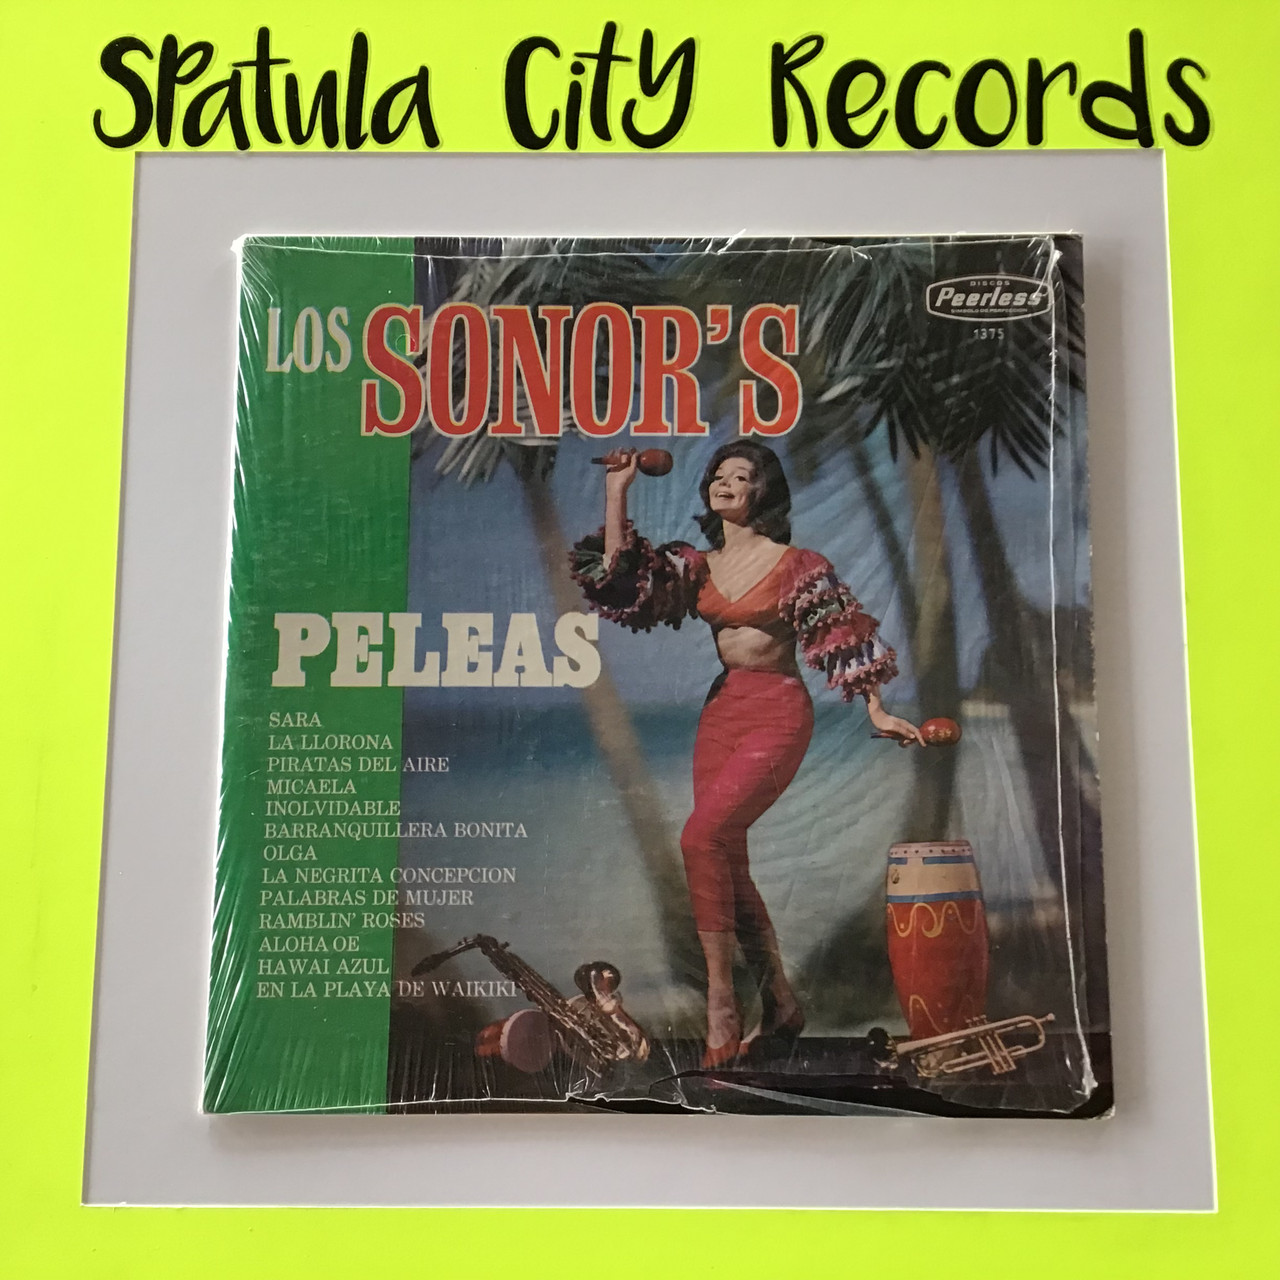 Los Sonor's - Peleas - vinyl record album LP